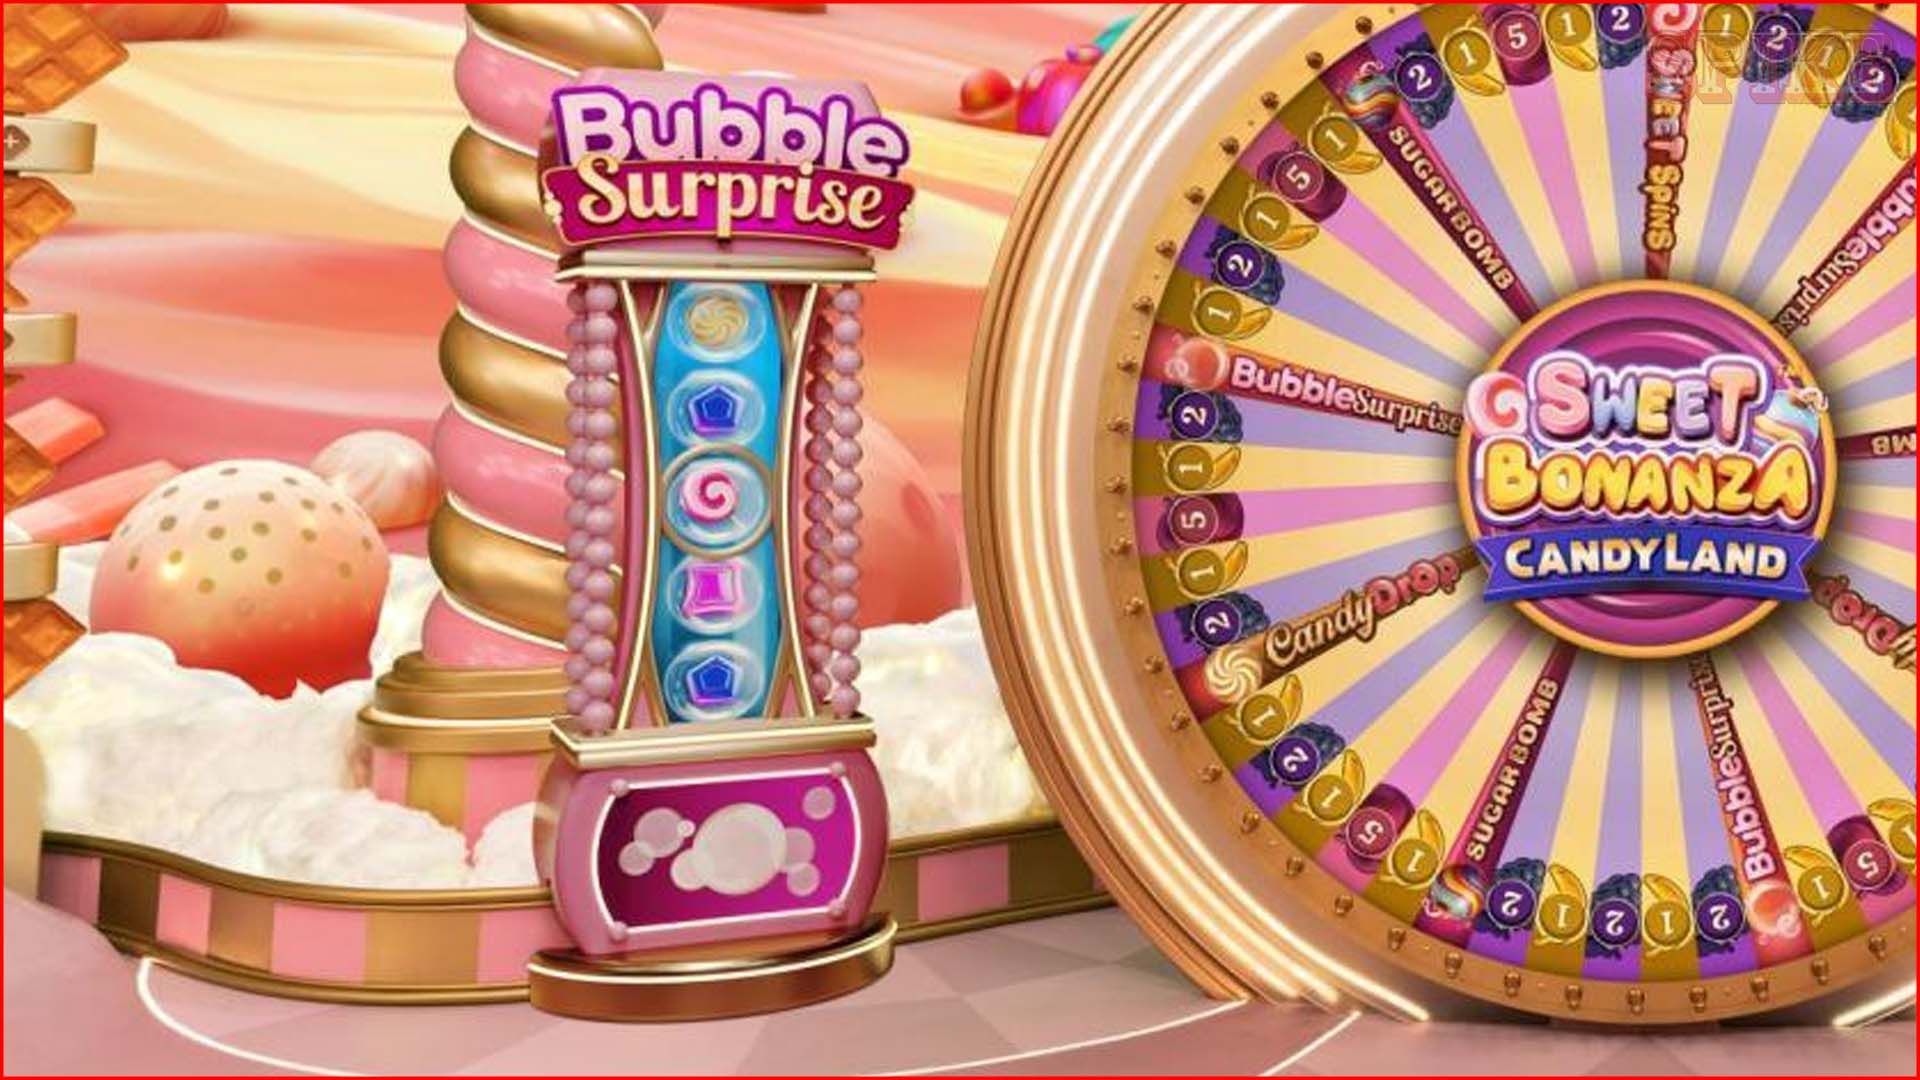 Bubble Surprise Sweet Bonanza Candyland